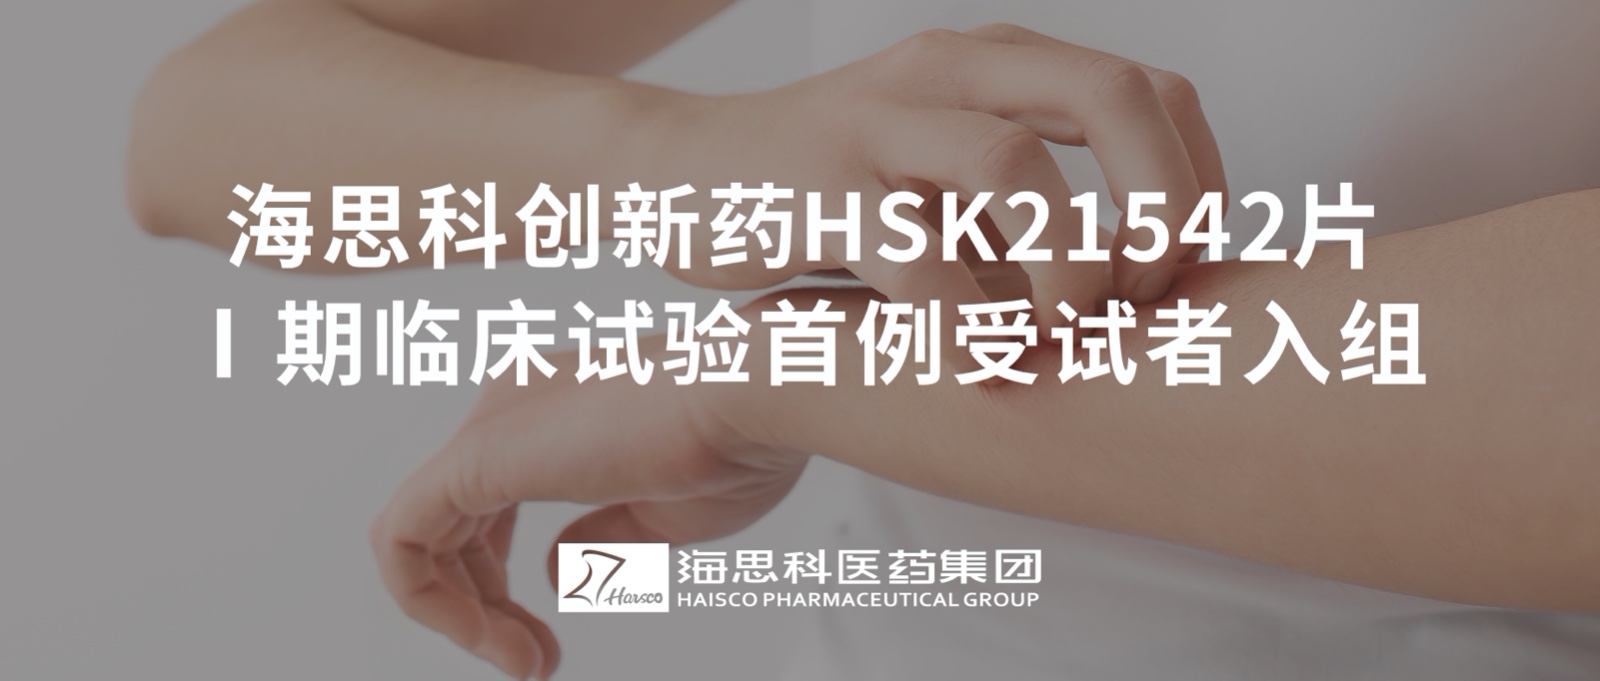 乐鱼游戏app正规版创新药HSK21542片Ⅰ期临床试验首例受试者入组